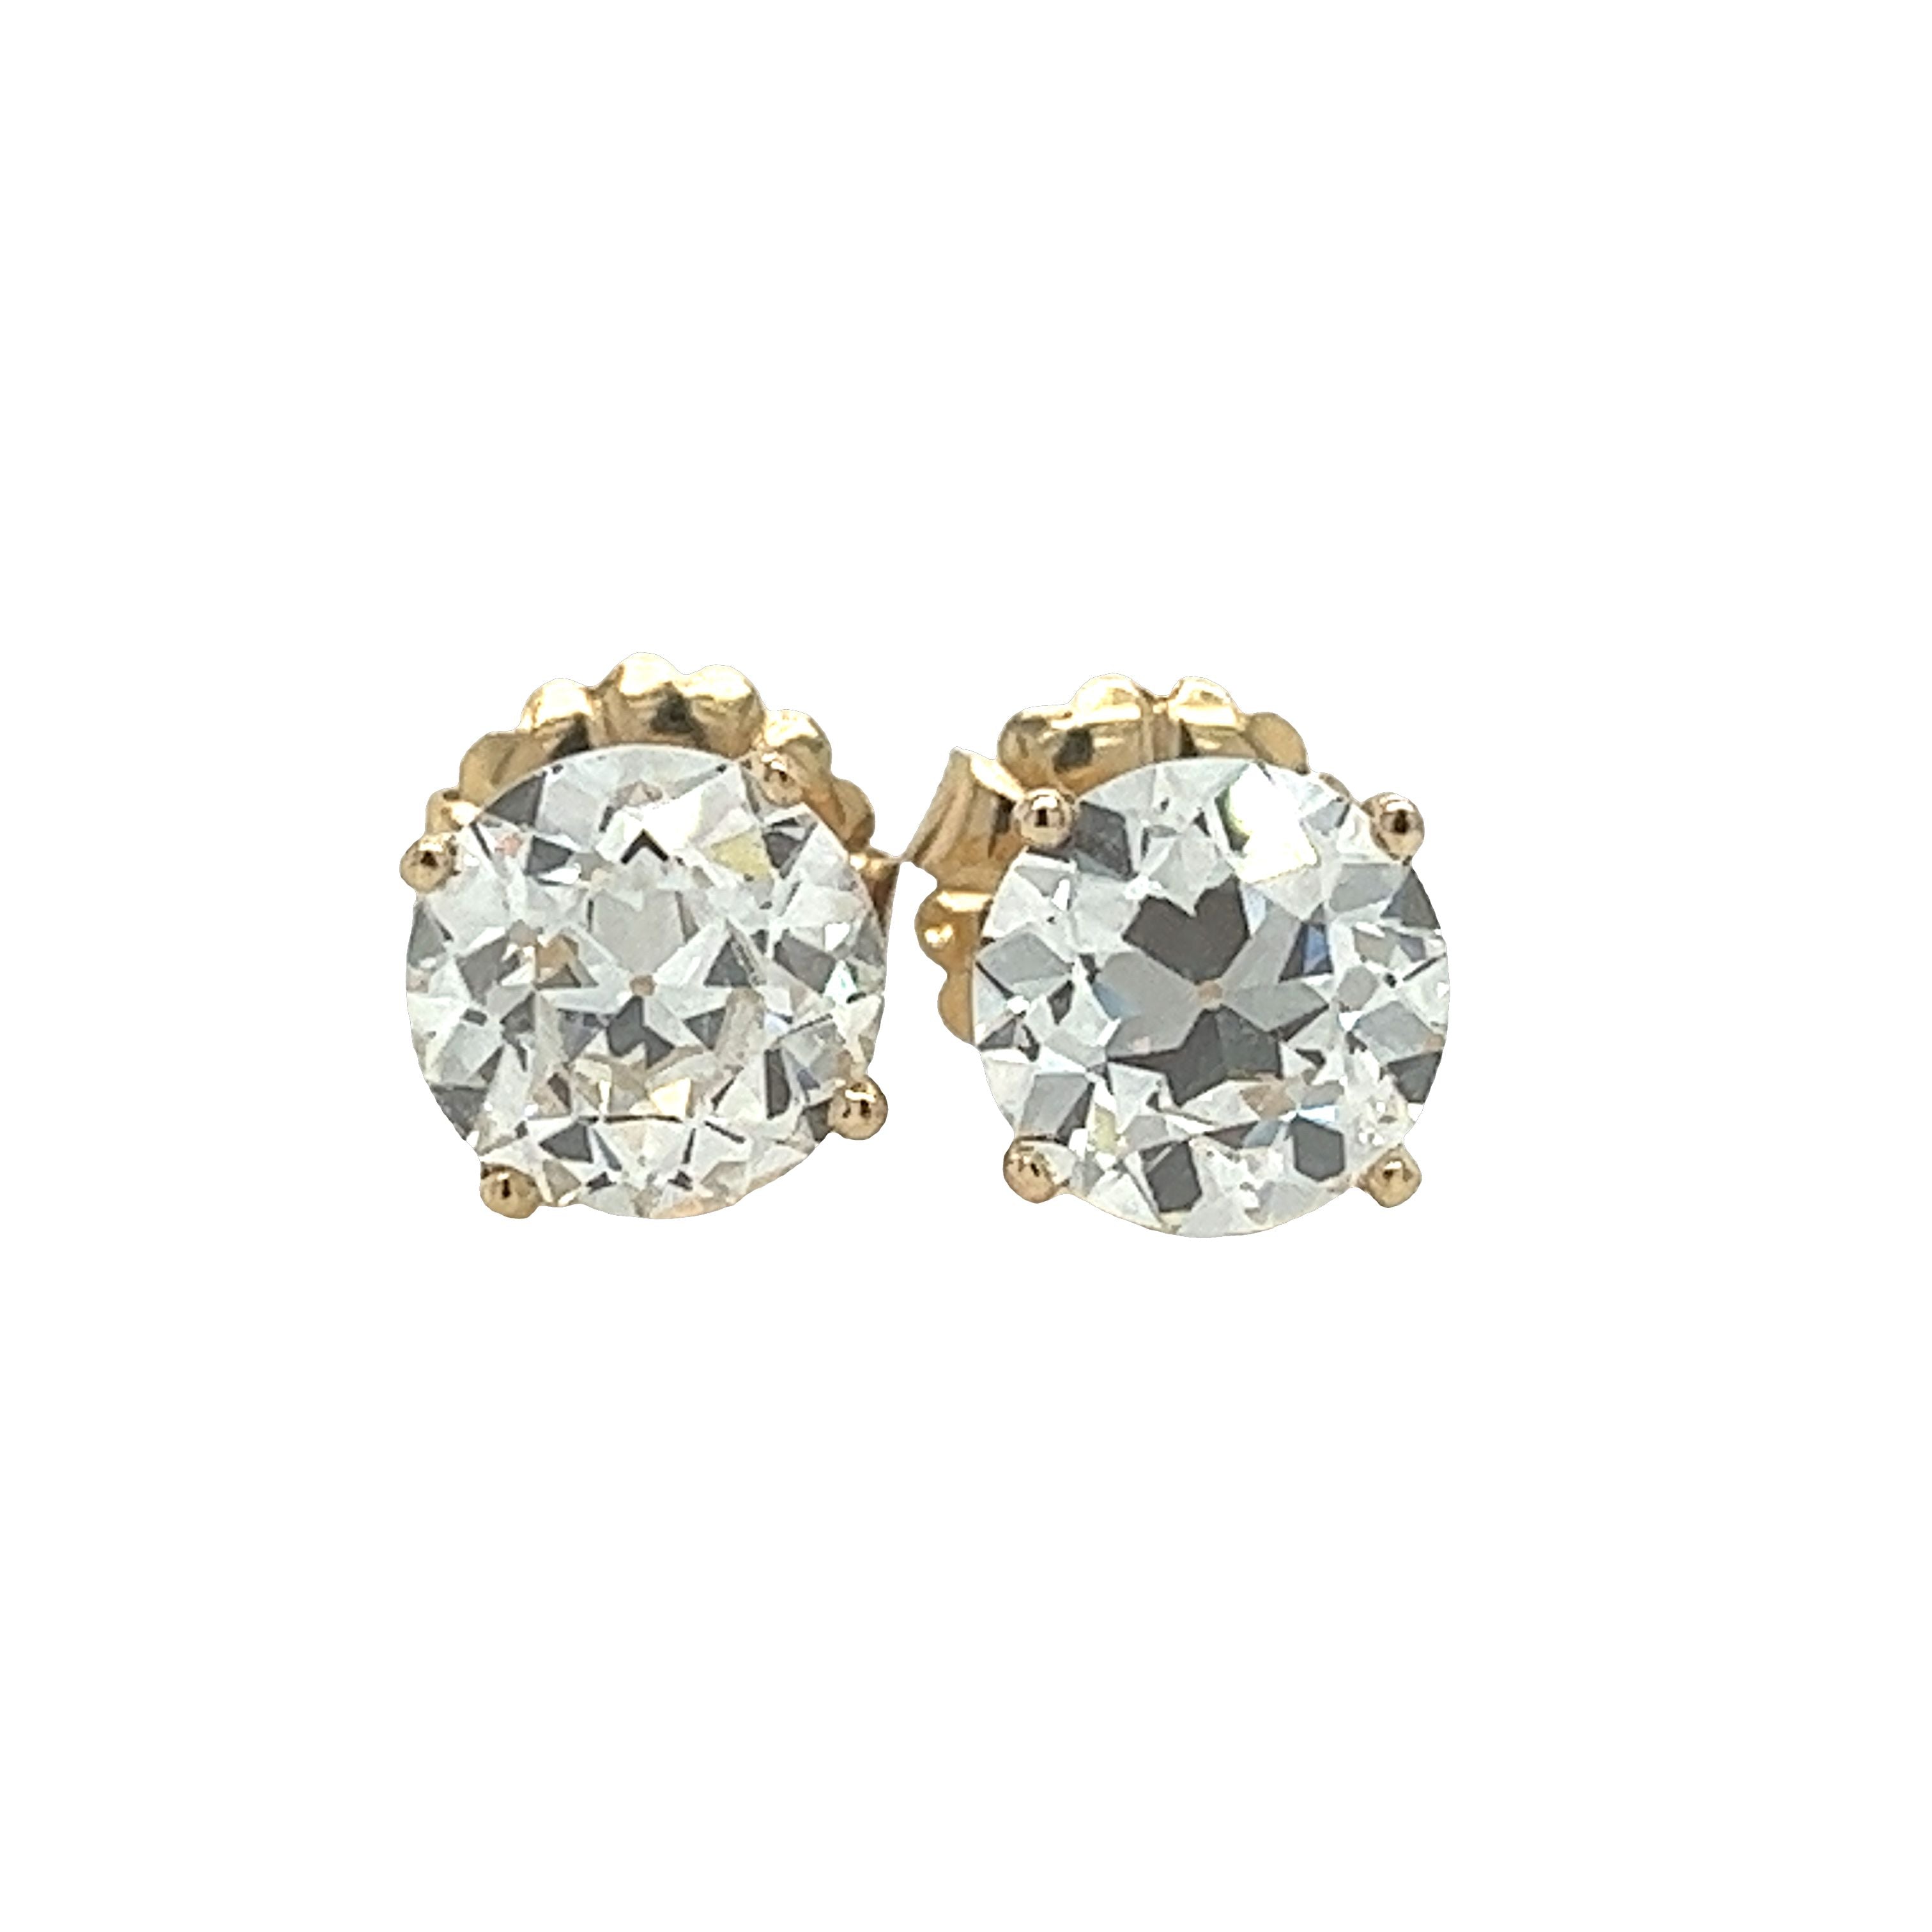 IGI Certified 6 Carat Total Old European Cut Lab Grown Diamond Stud Earrings 14K Yellow Gold-Earrings-ASSAY